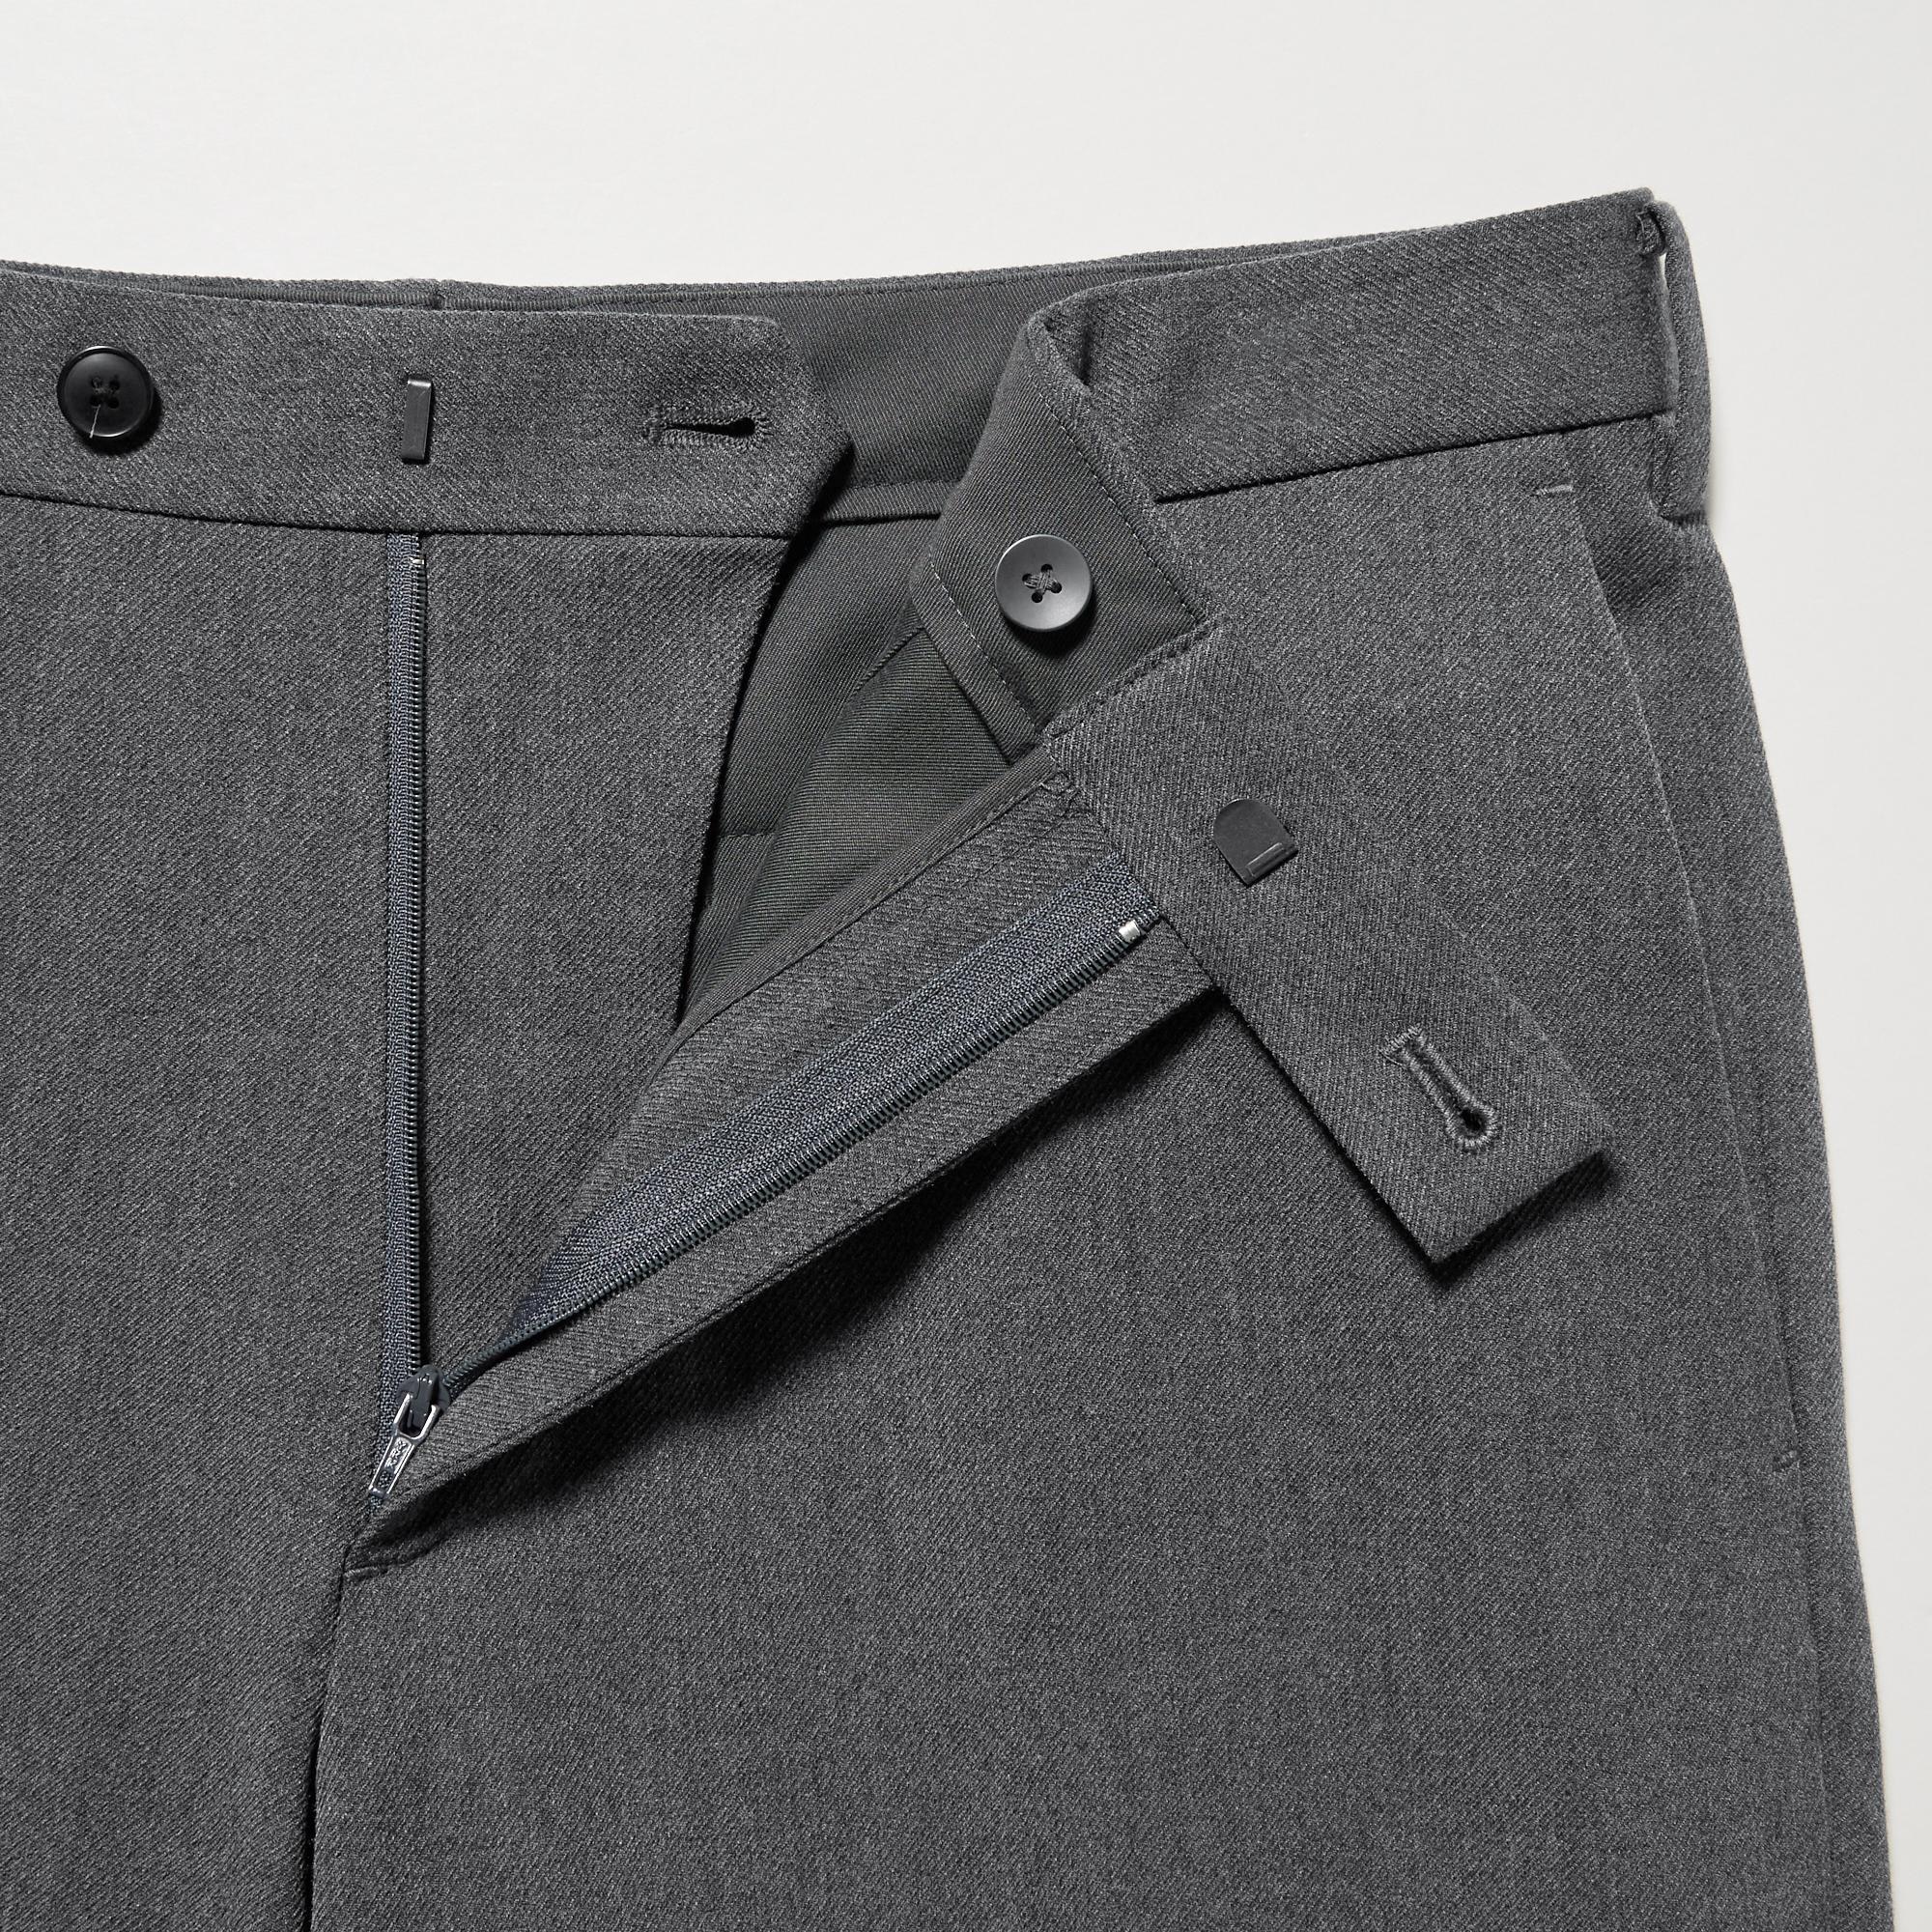 Buy Men's Grey Slim Fit Trousers Online at Bewakoof